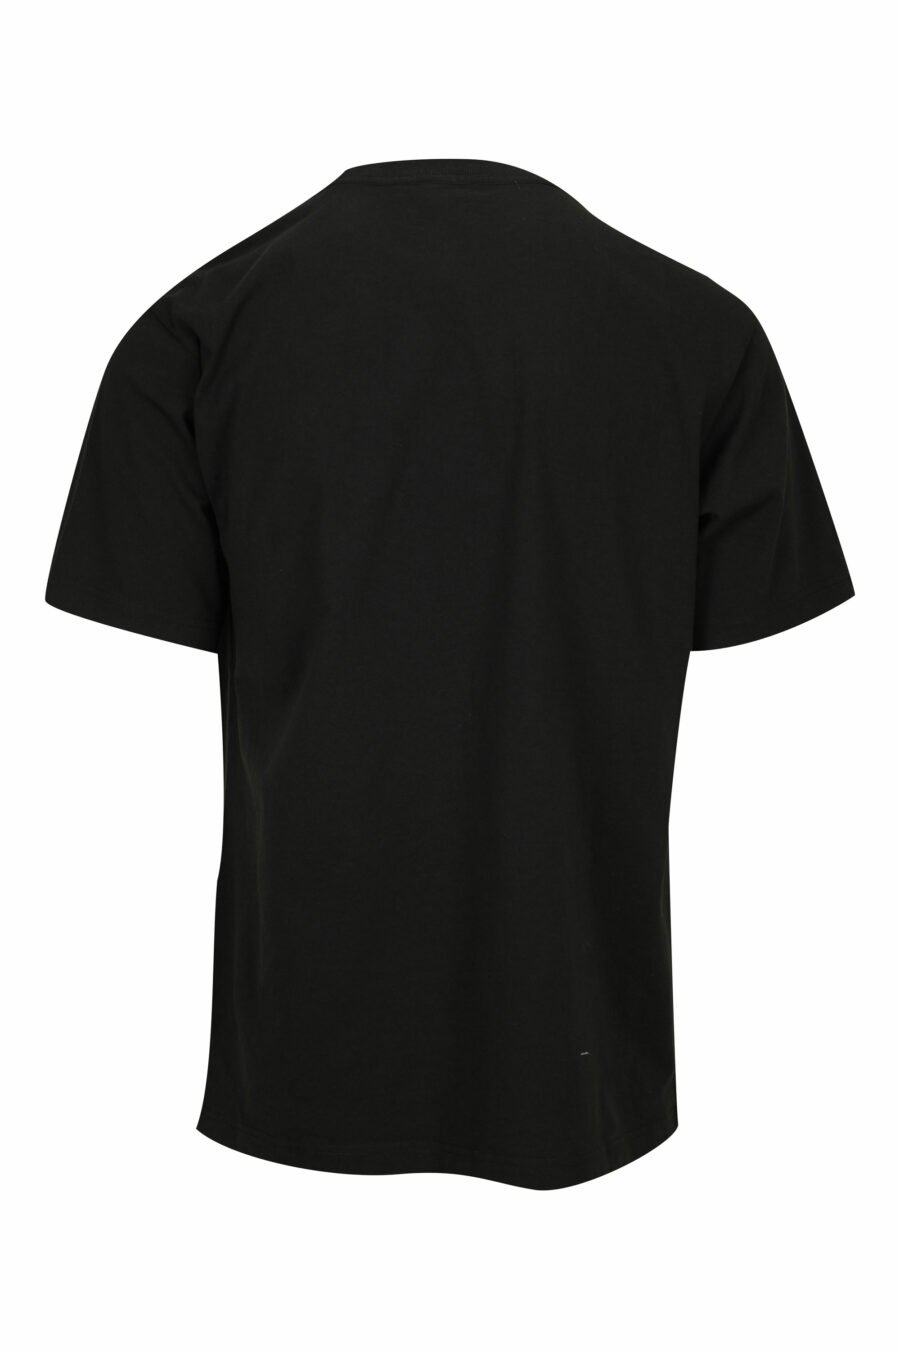 Camiseta negra con maxilogo diagonal "kenzo orange" - 3612230626997 1